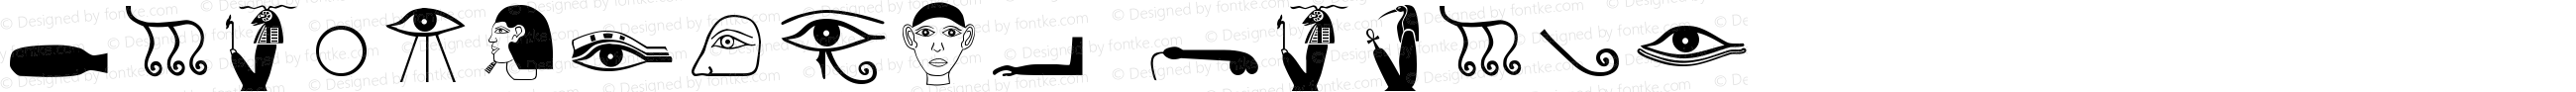 HieroglyphB